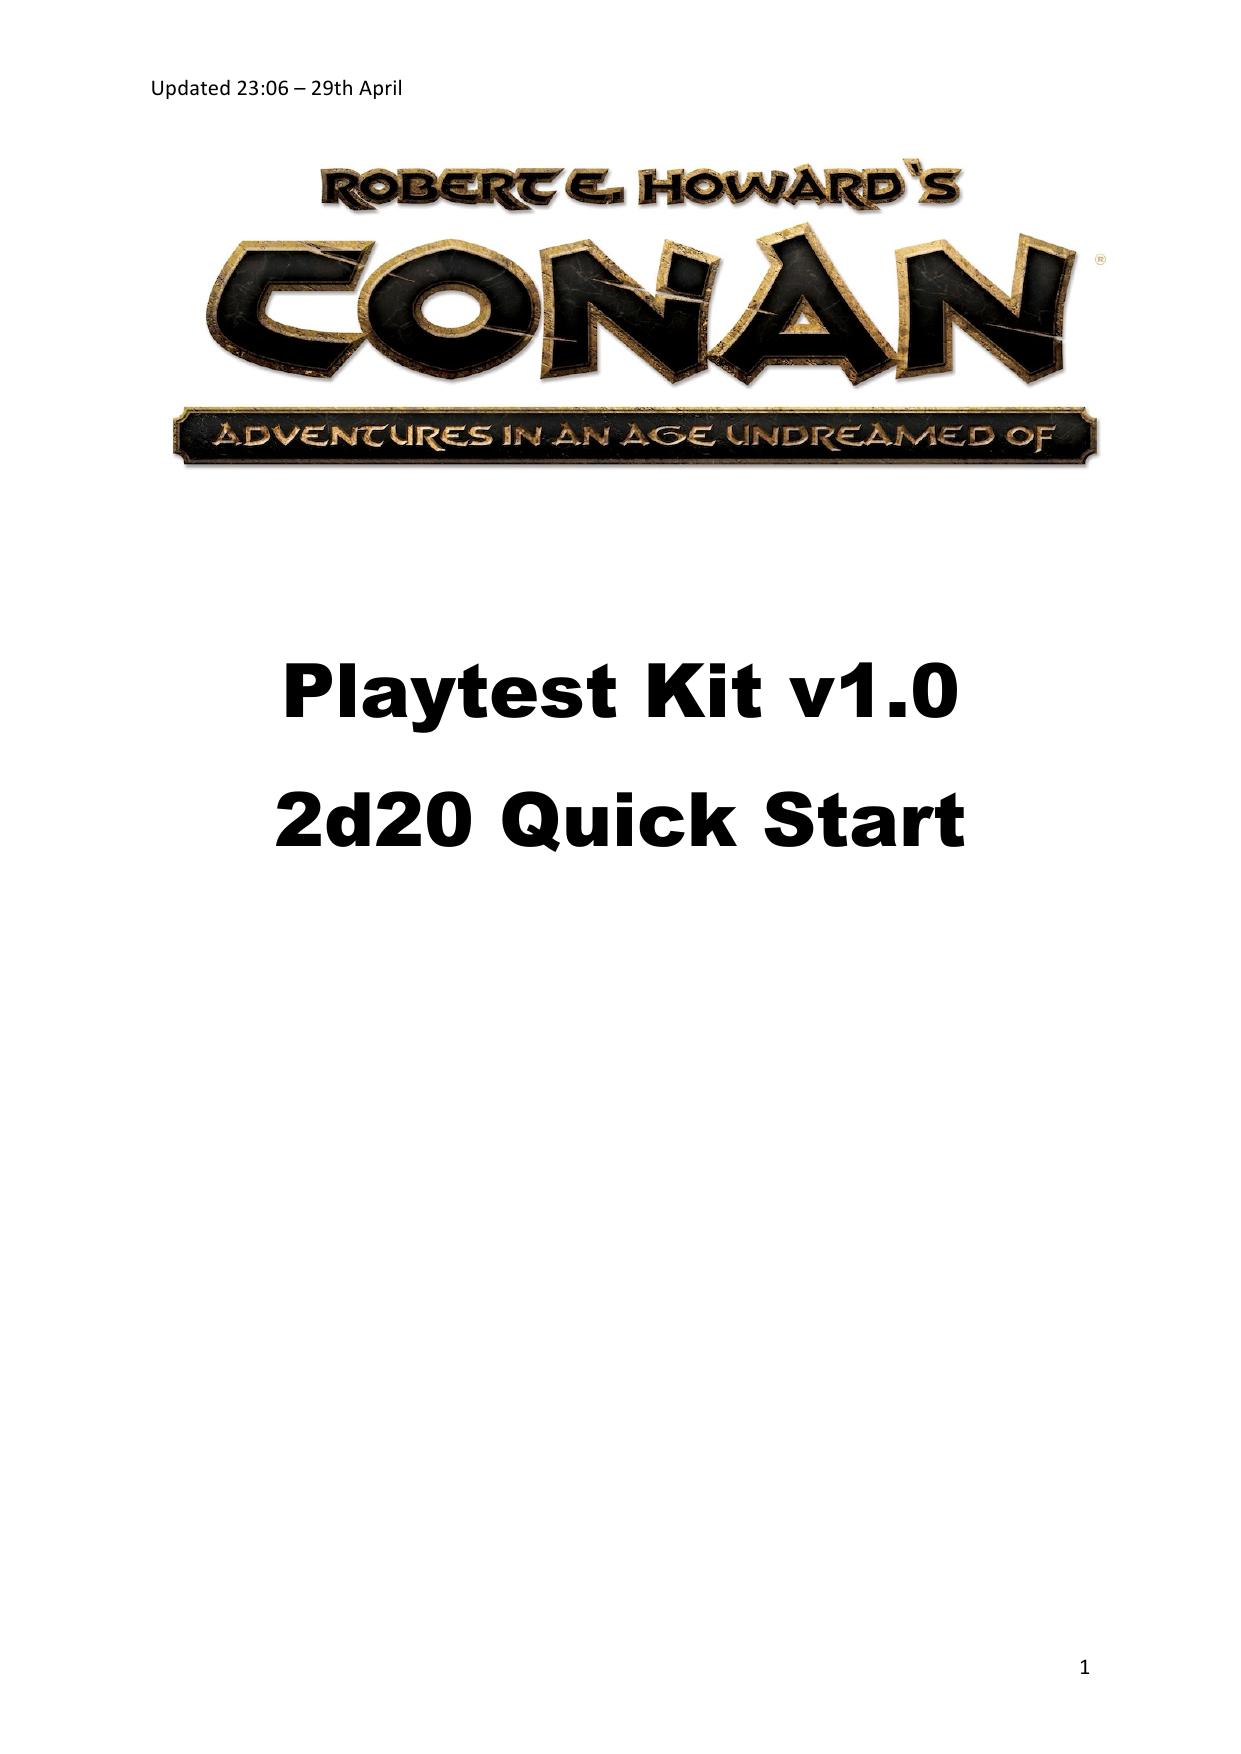 Conan Modiphius Playtest Kit v1.0 2d20 Quickstart Rules